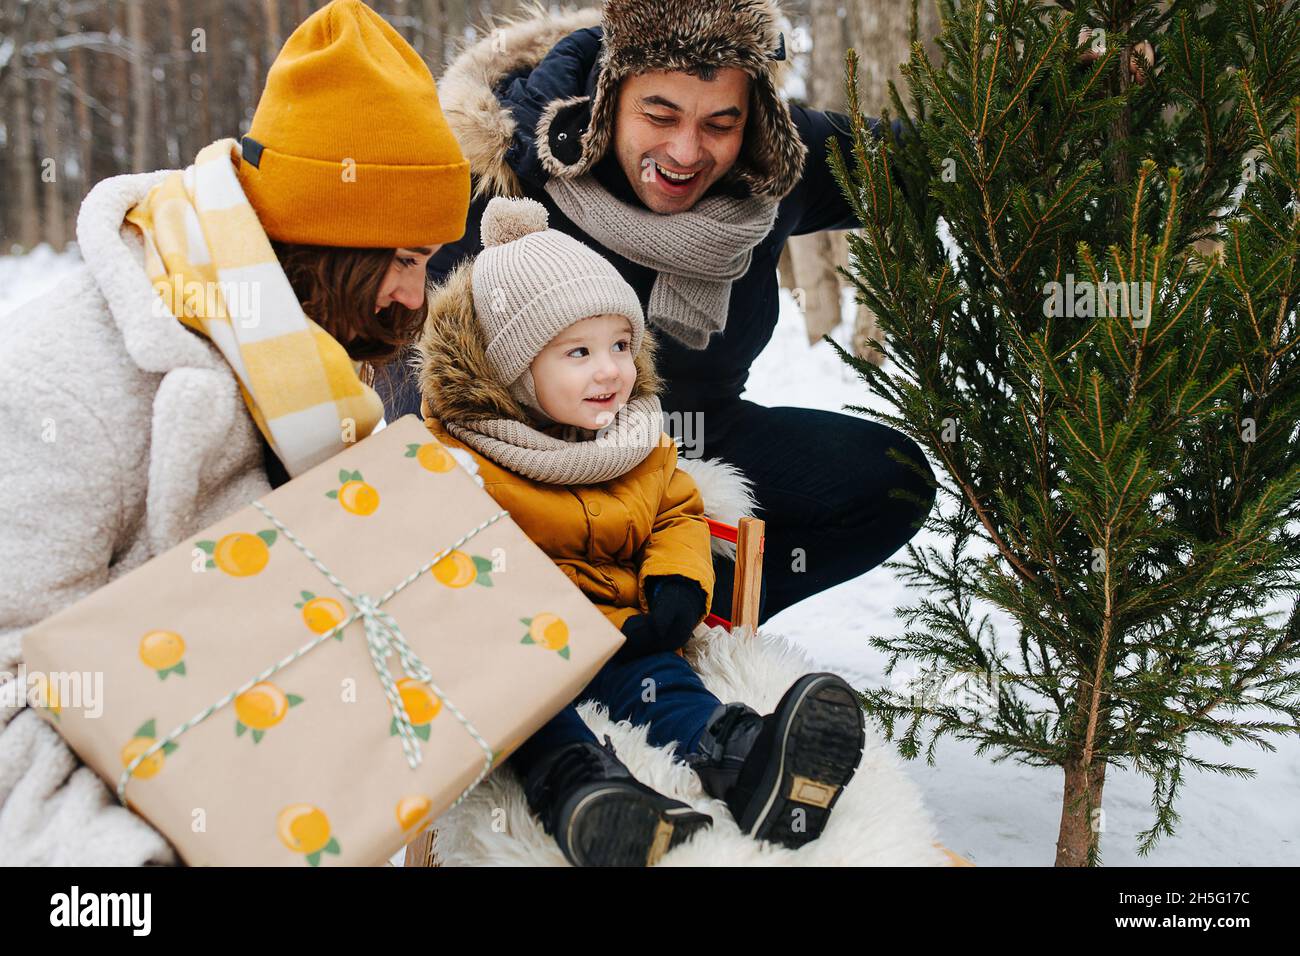 Famiglia in una foresta d'inverno, un genitore vicino ad un capretto in una slitta, la mamma sta tenendo un regalo ed il papà sta mostrando un albero di Natale Foto Stock